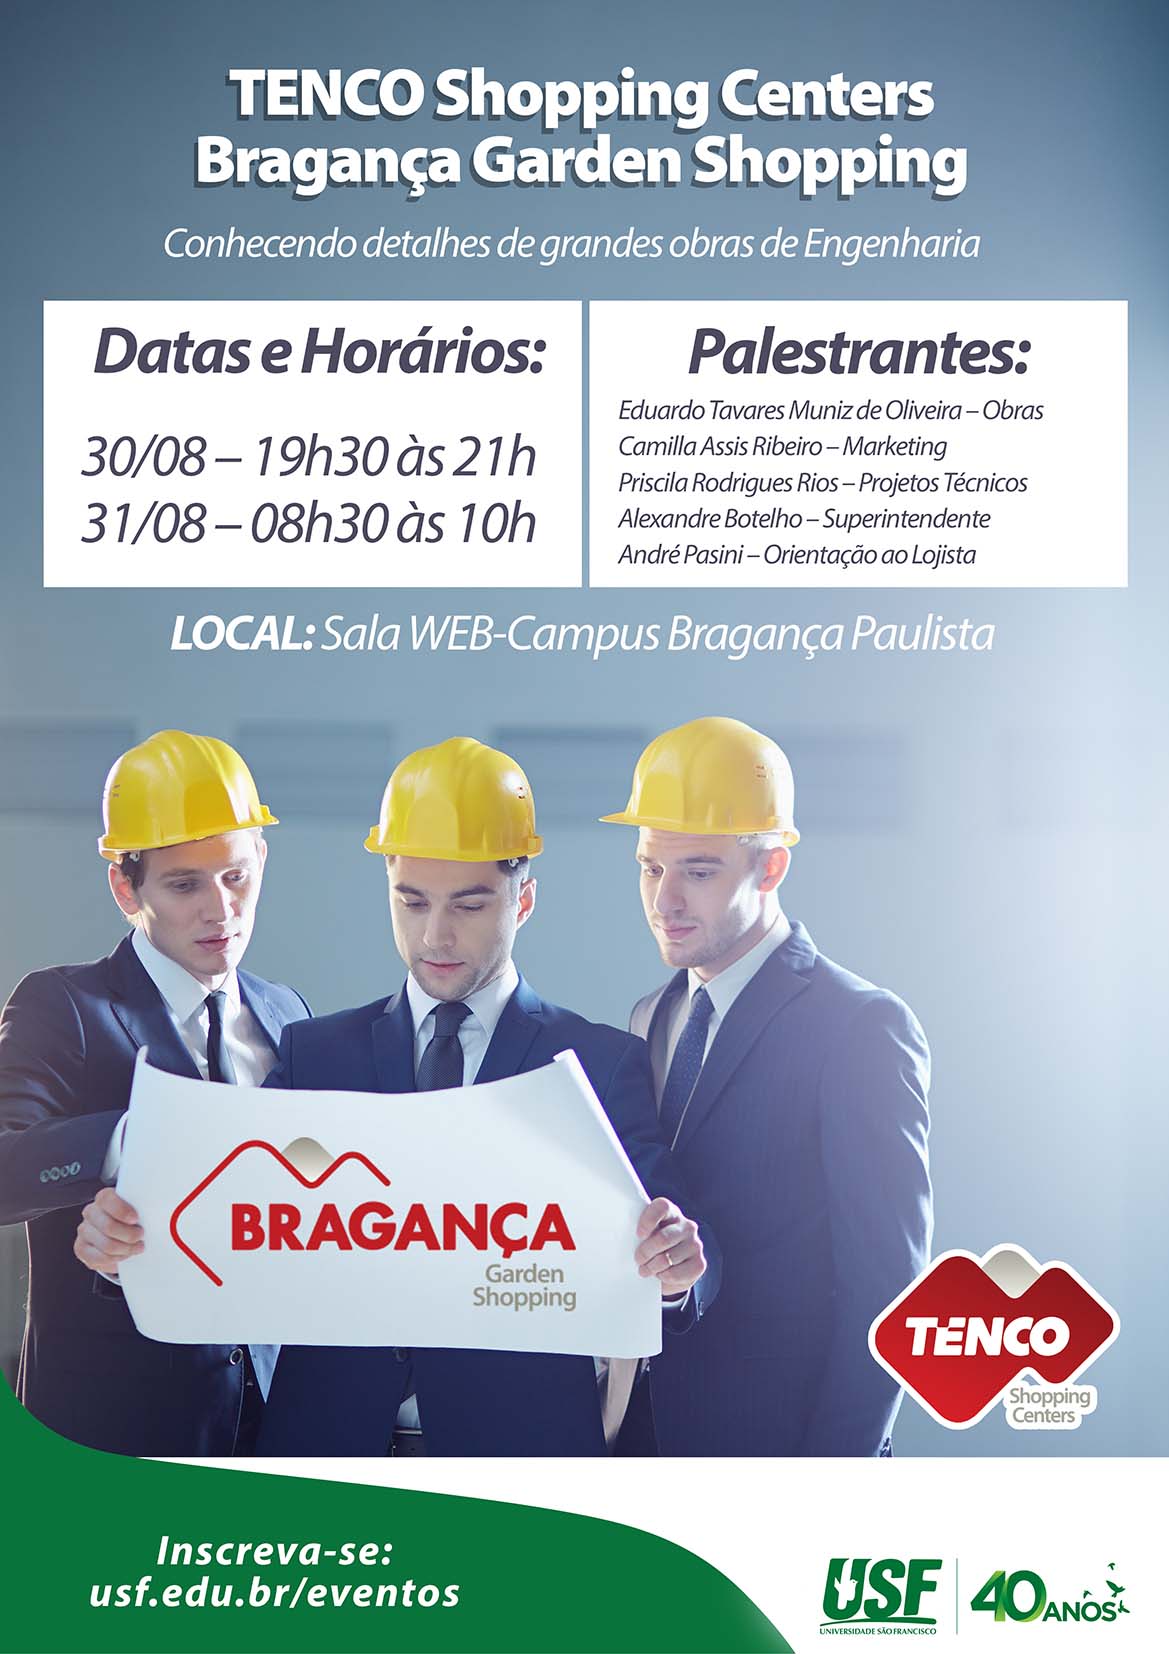 TENCO Shopping Centers – Bragança Garden Shopping